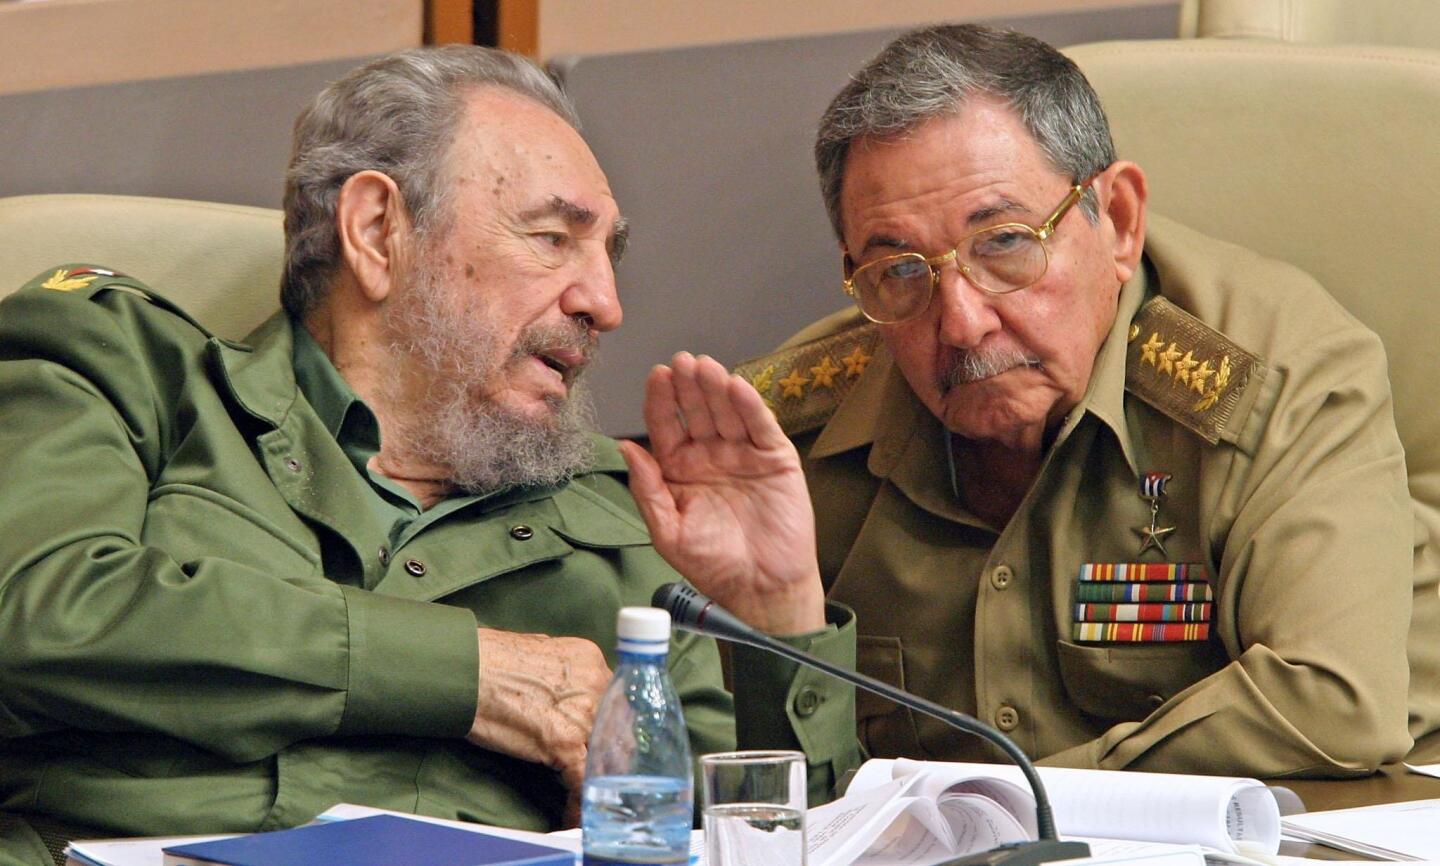 Fidel Castro and his brother, Raul Castro